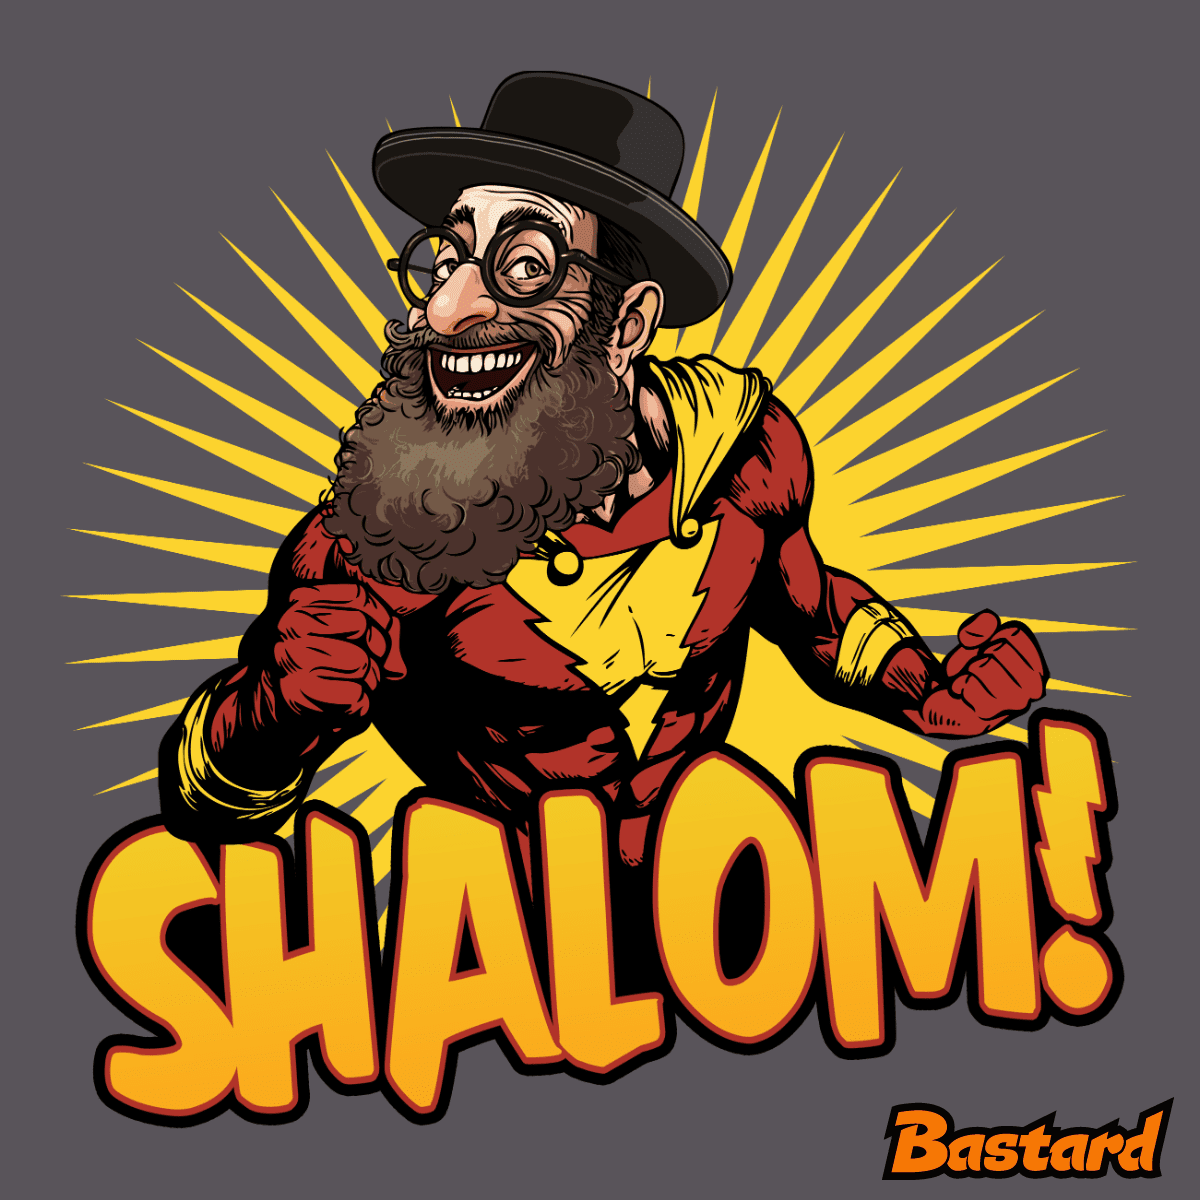 Shalom!